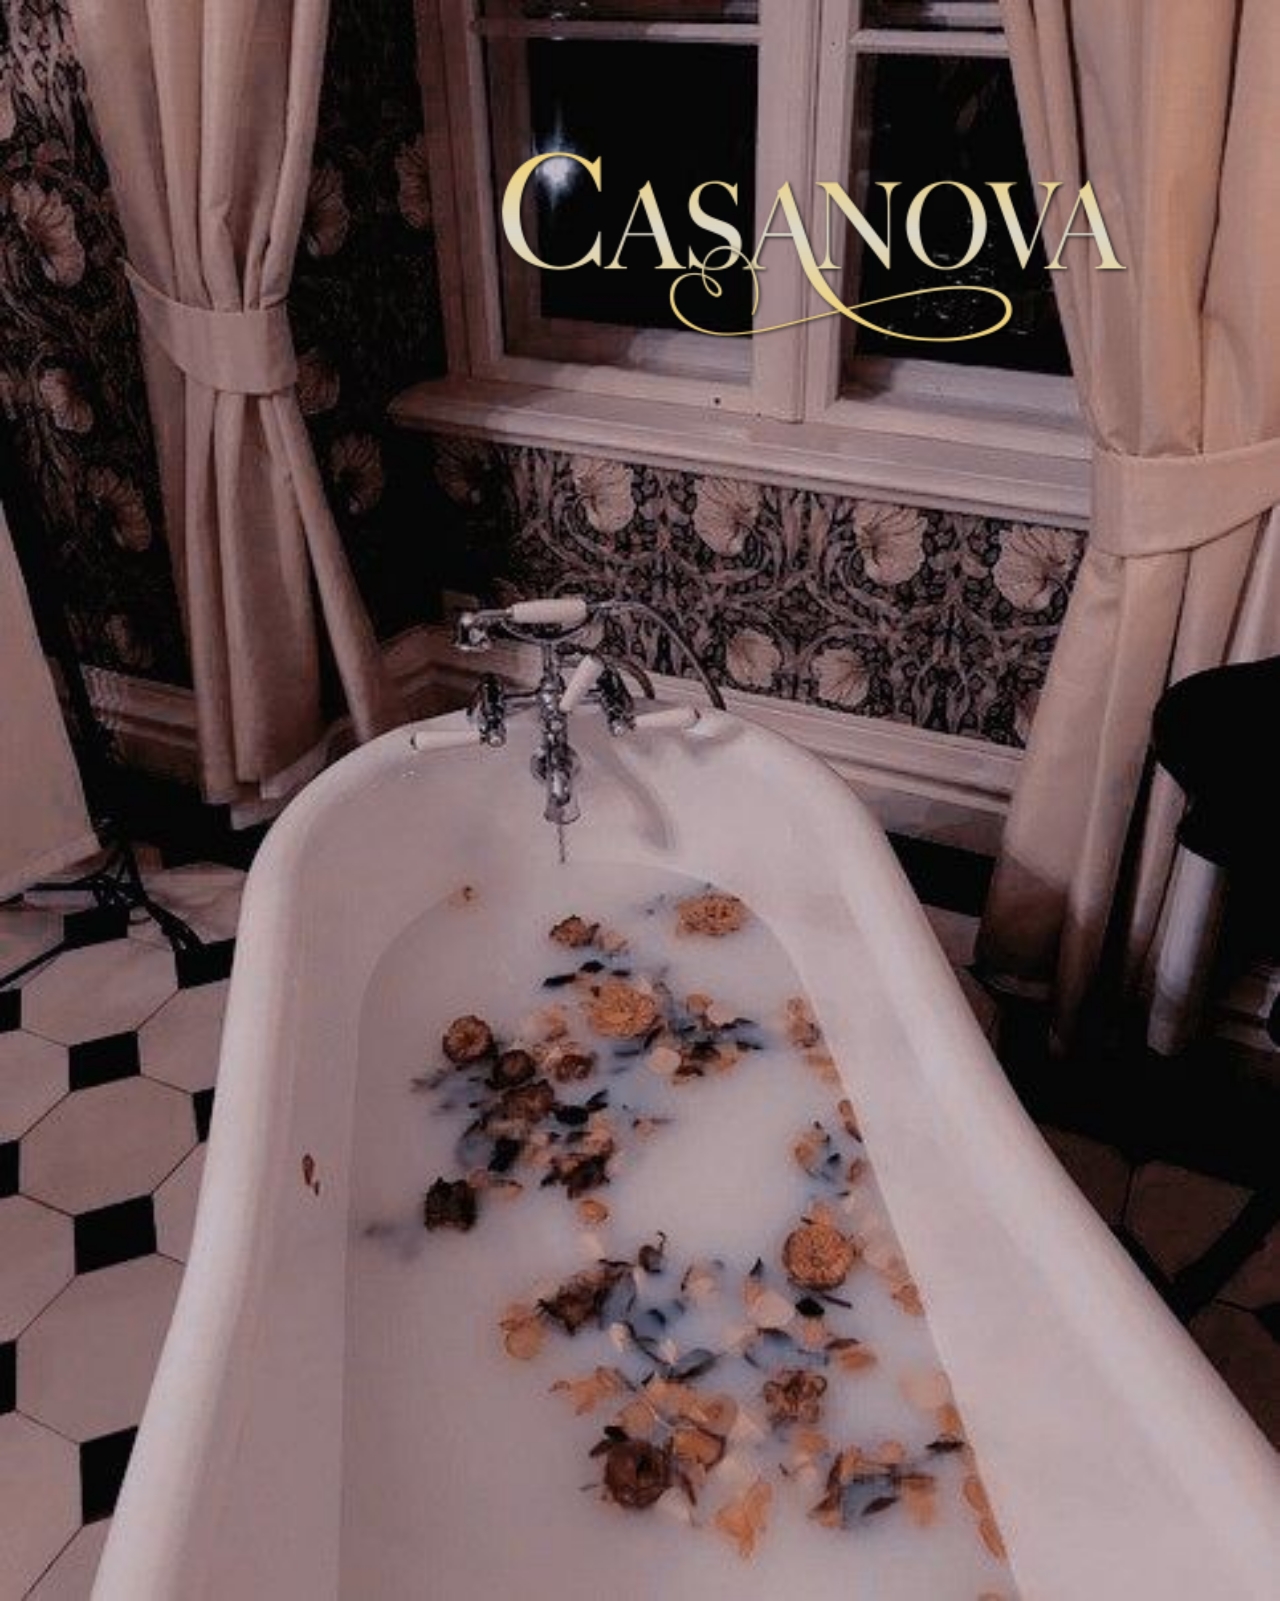 고풍적인 집안의 욕실에 클래식한 욕조안에 담겨져있는 물과 꽃